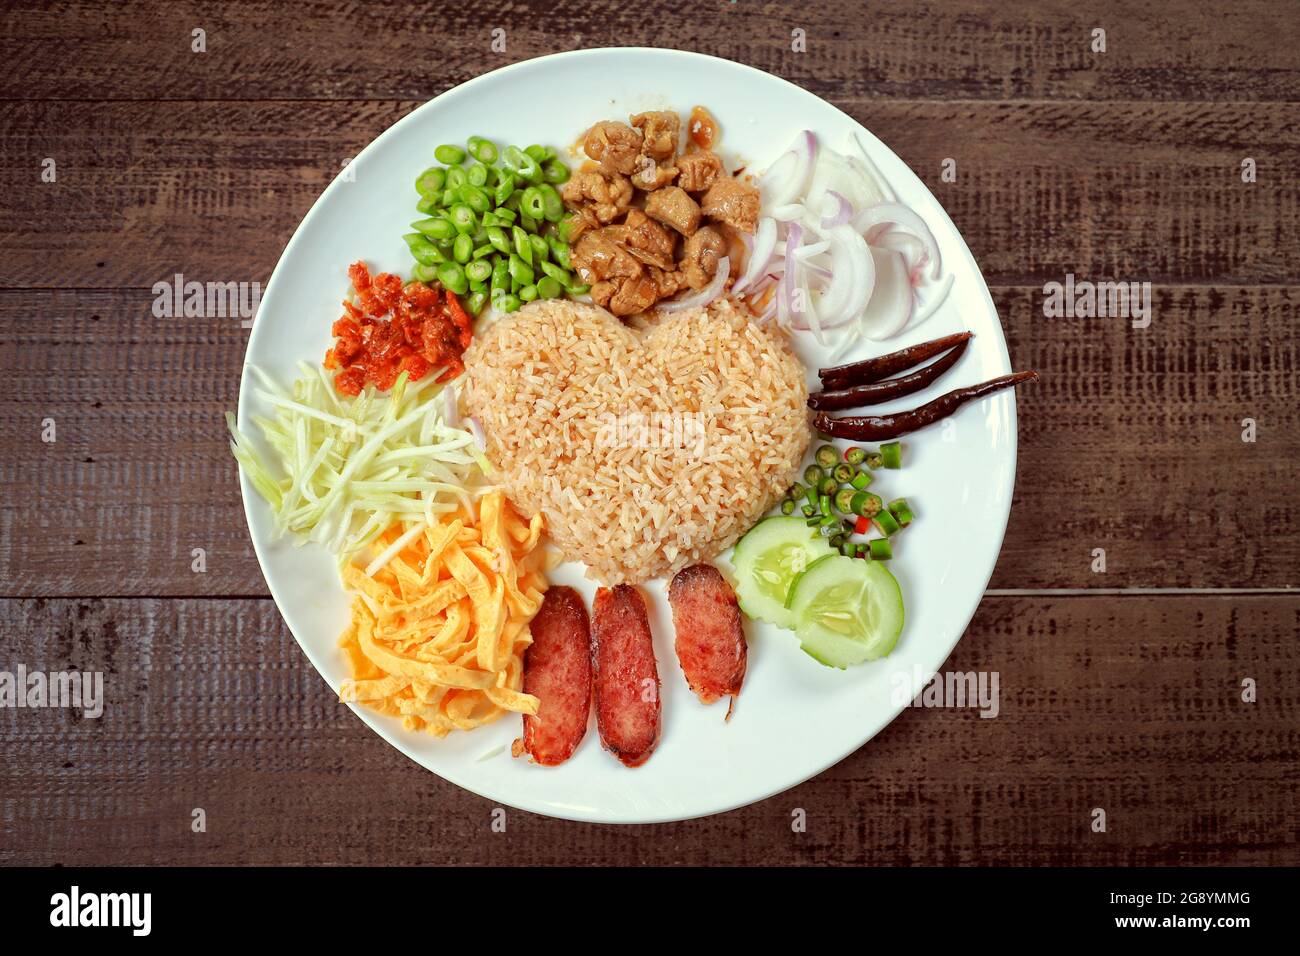 Beliebte thailändische einheimische Lebensmittel, gebratener Reis mit Garnelenpaste servieren mit Gemüse, Ei in Scheiben geschnitten und würzige Zutaten, verschiedene Gemüsesorten Stockfoto